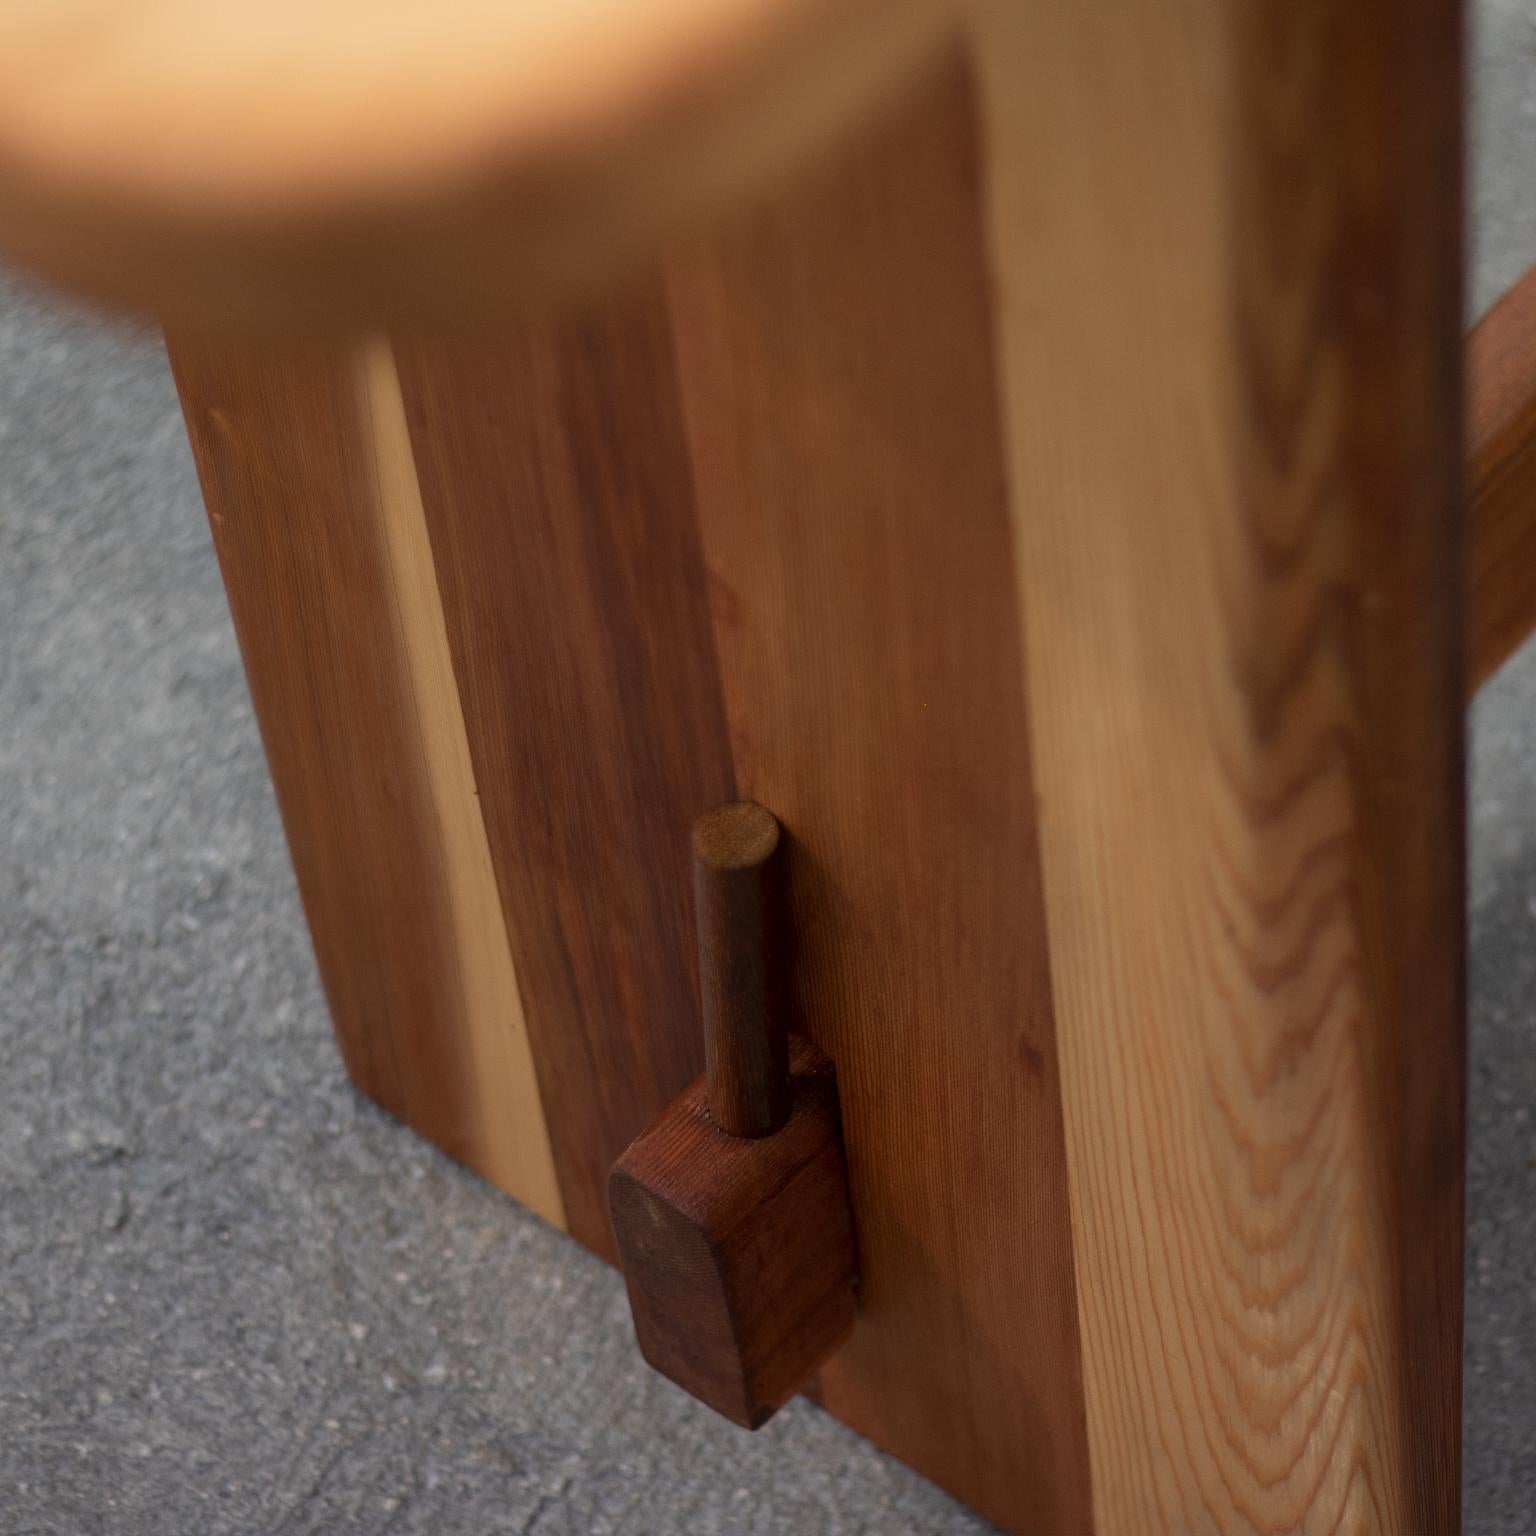 Cette table est construite en cèdre massif avec une menuiserie de style japonais. 
Les bords sont biseautés et les coins sont arrondis. 
La base est reliée au sommet à l'aide de chevilles.
Finition à l'huile de lin et à la cire